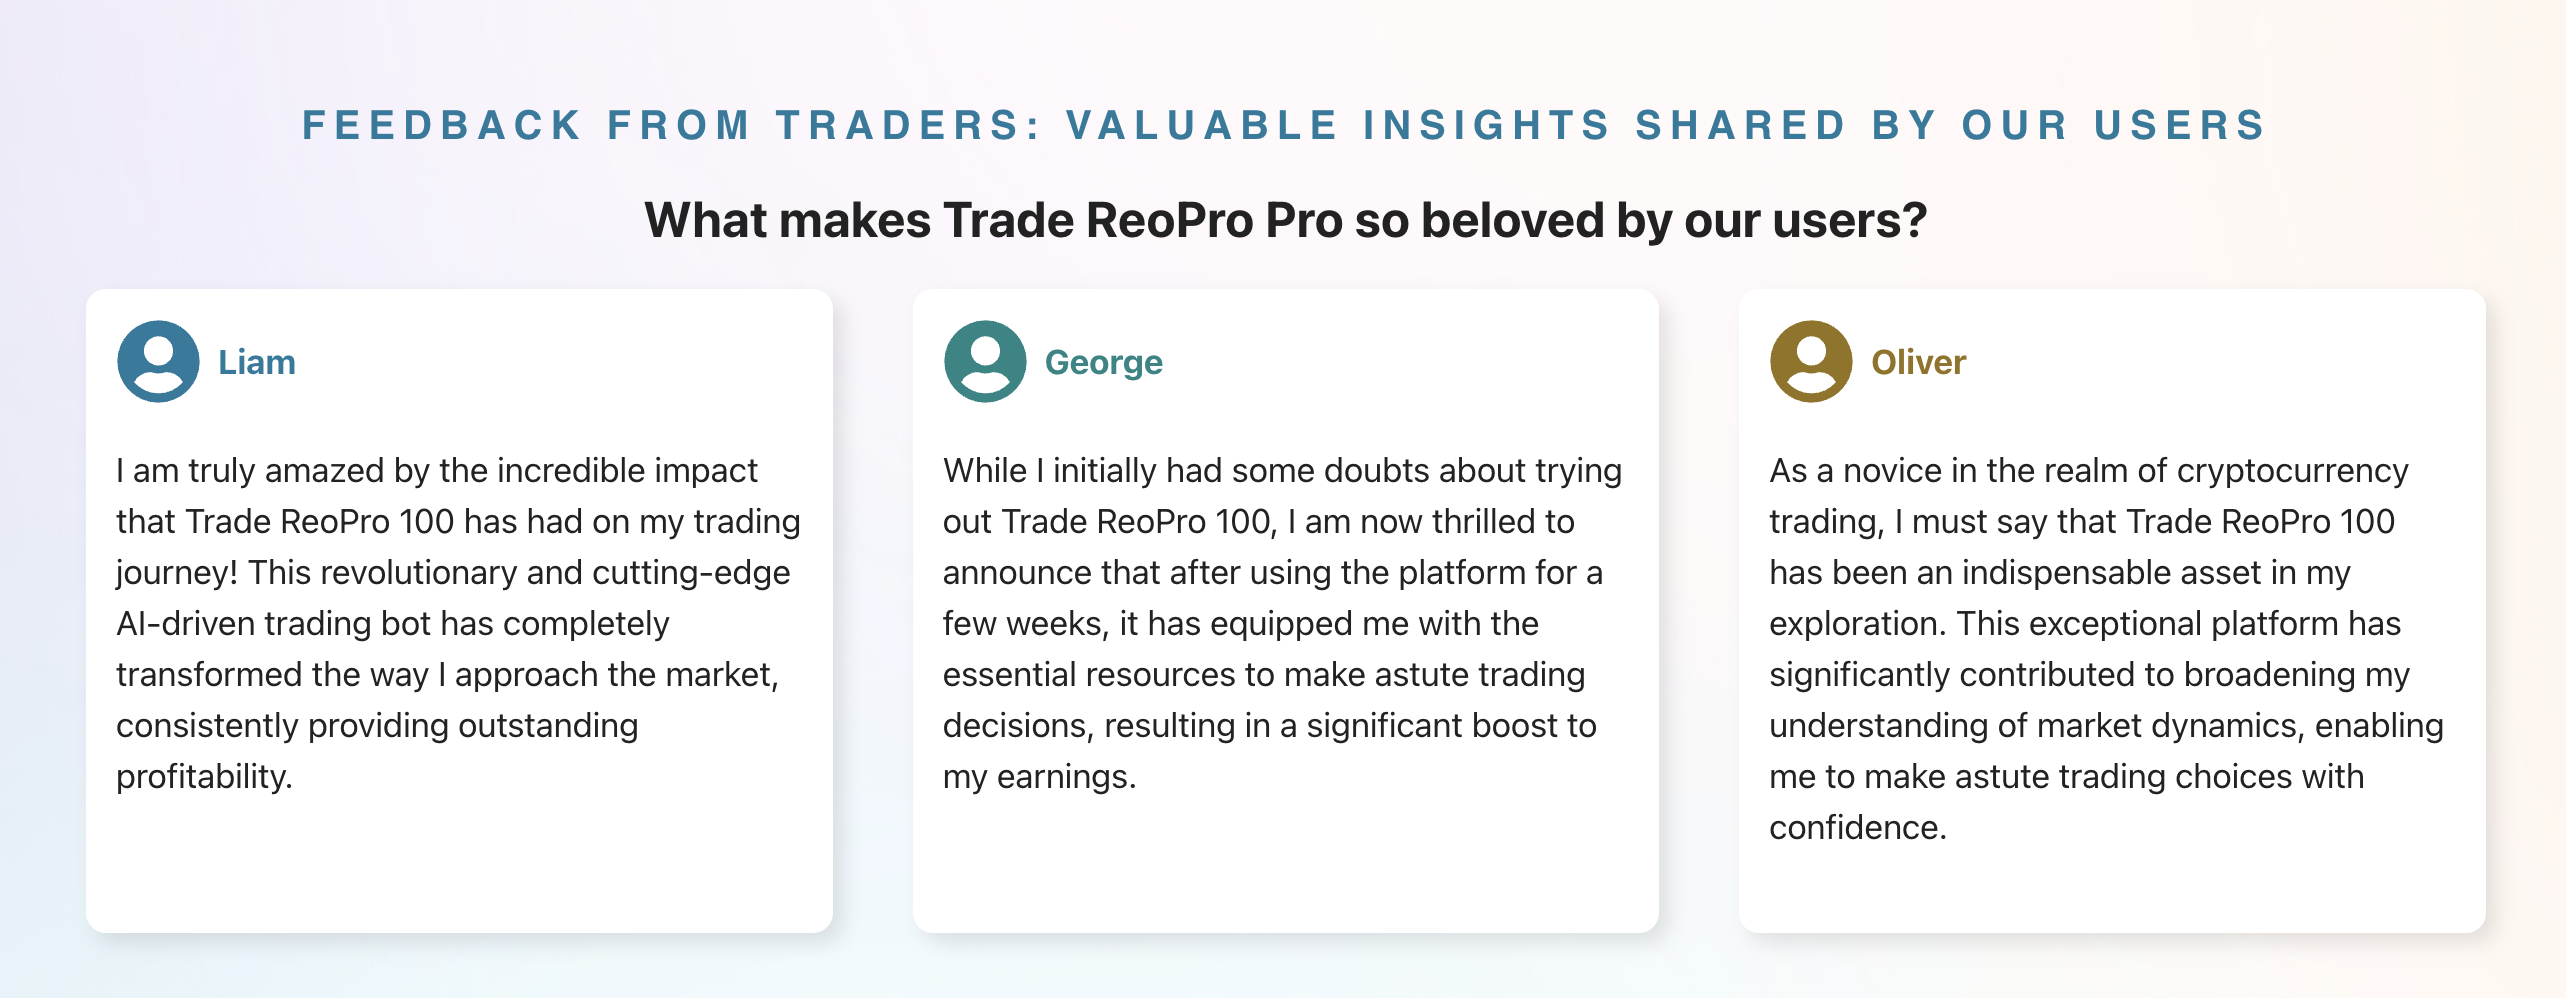 Trade ReoPro App - müşteriler